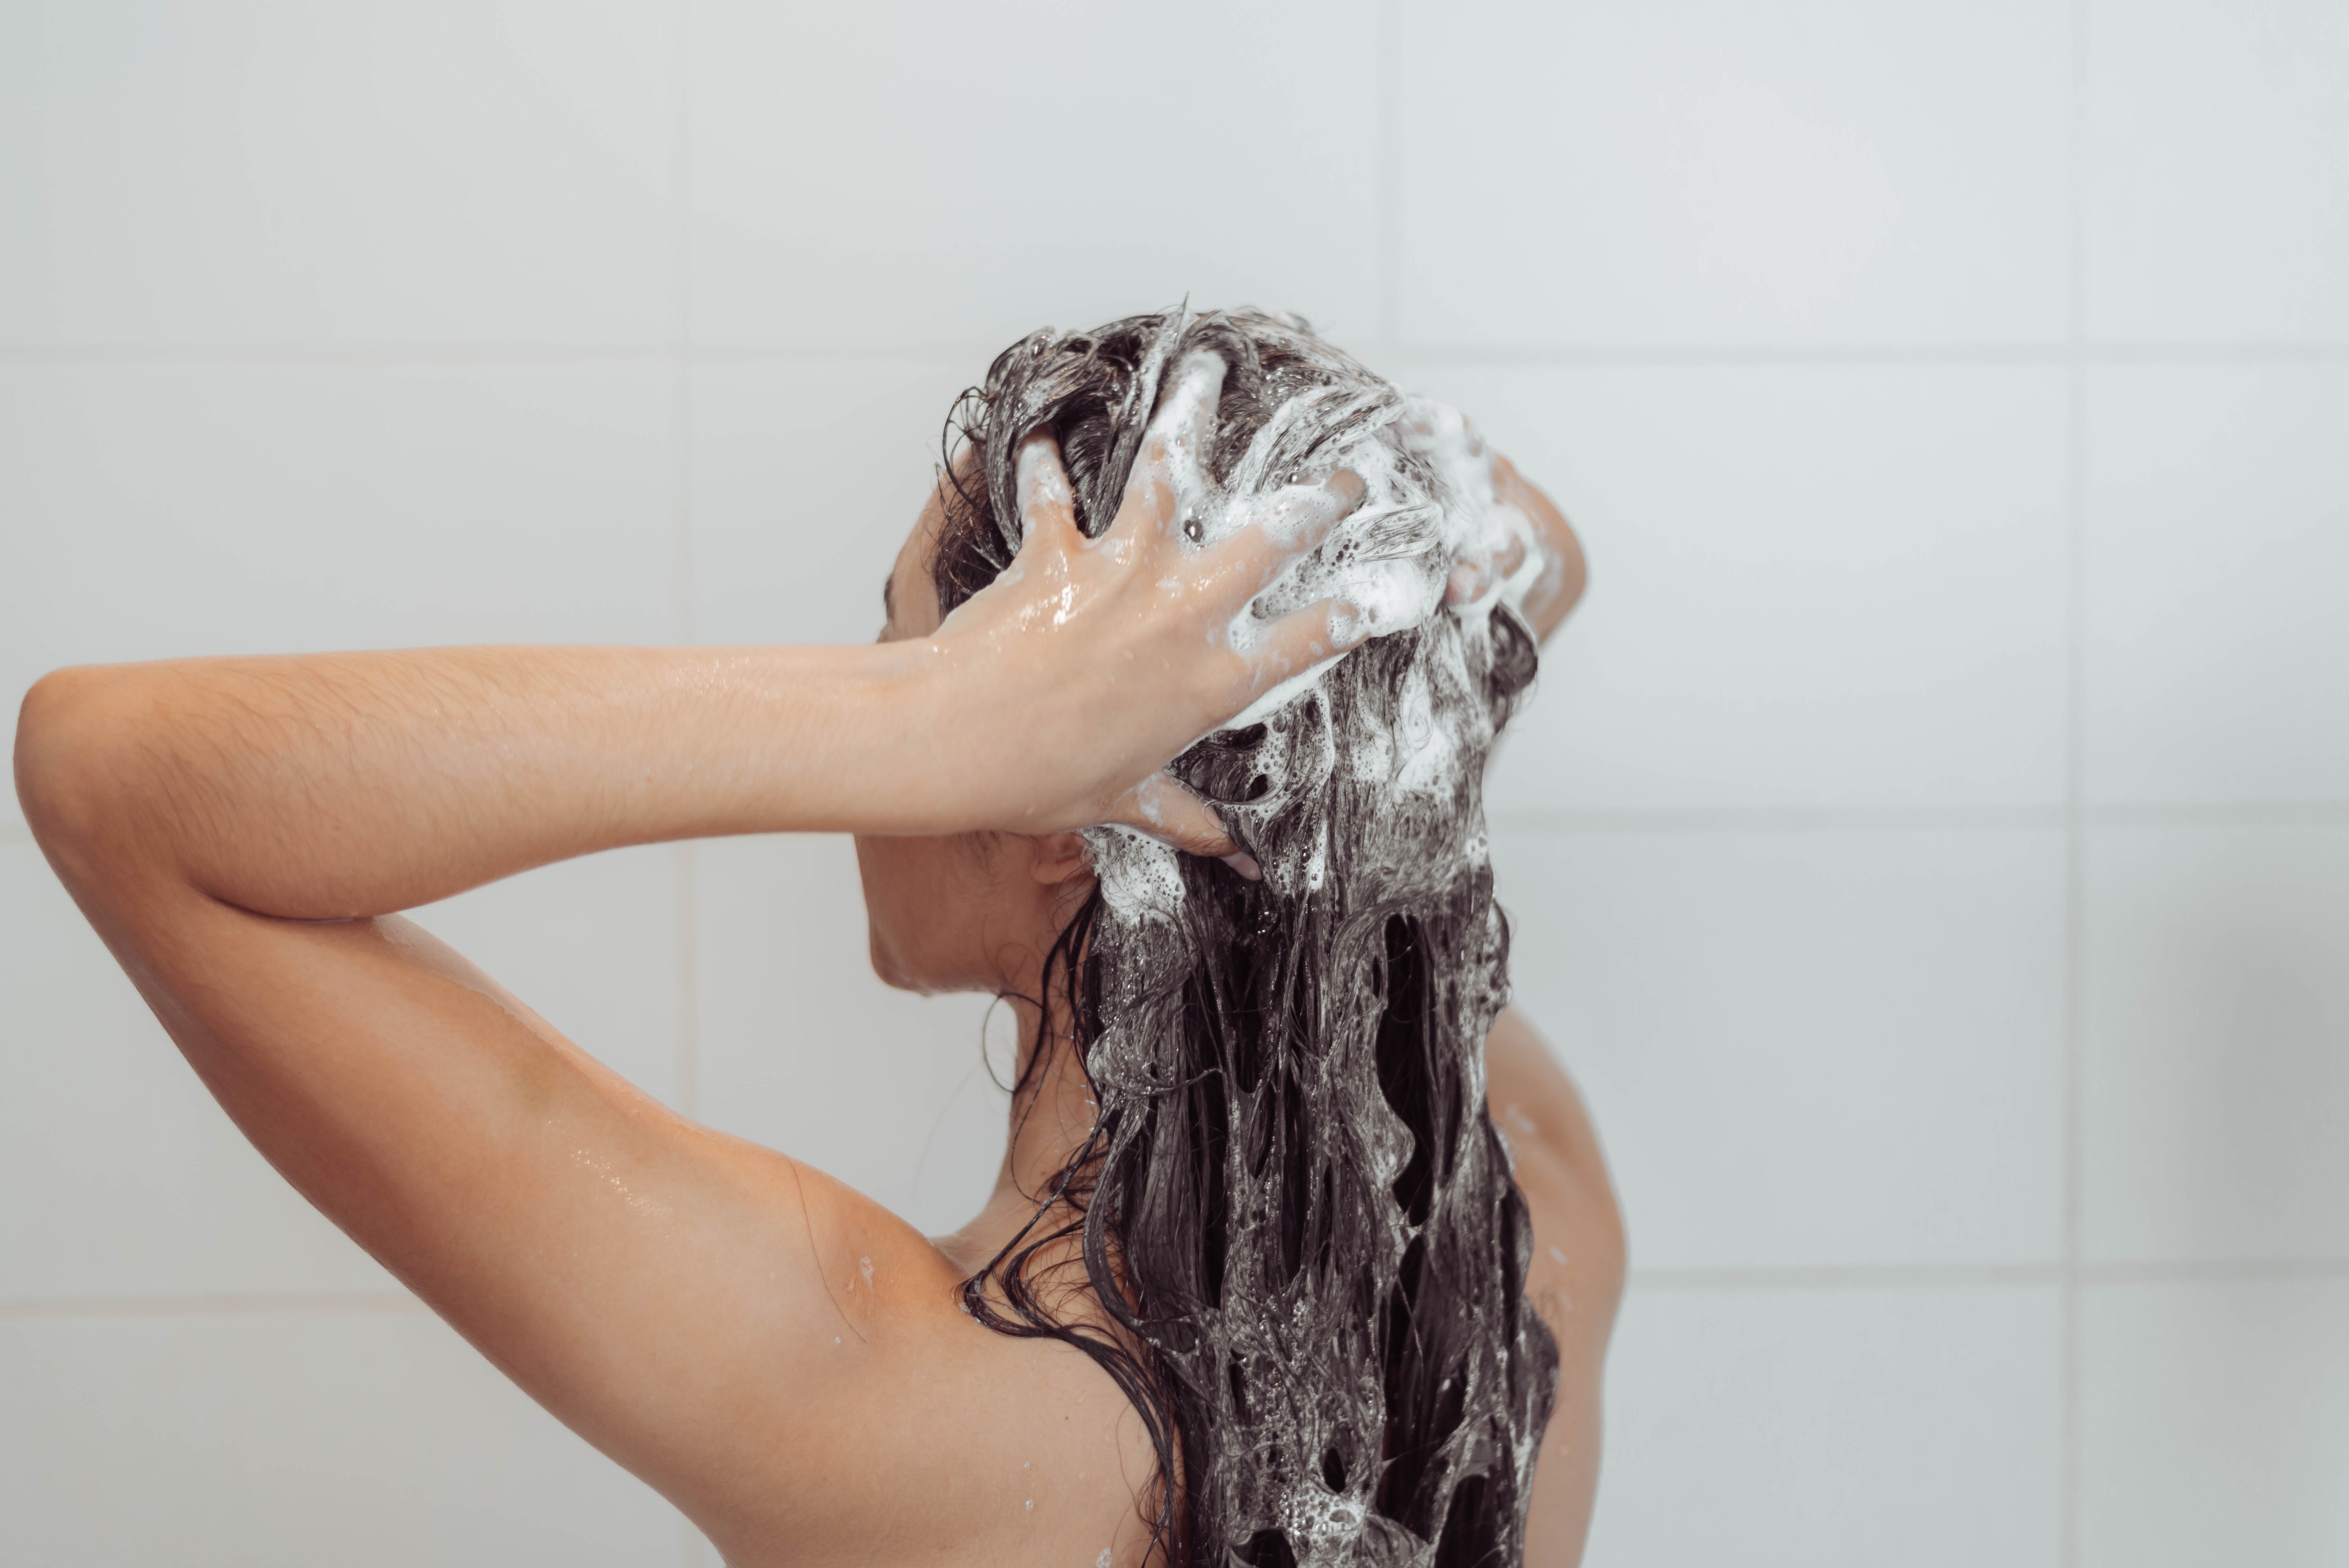 Woman washing  her hair | Source: Shutterstock